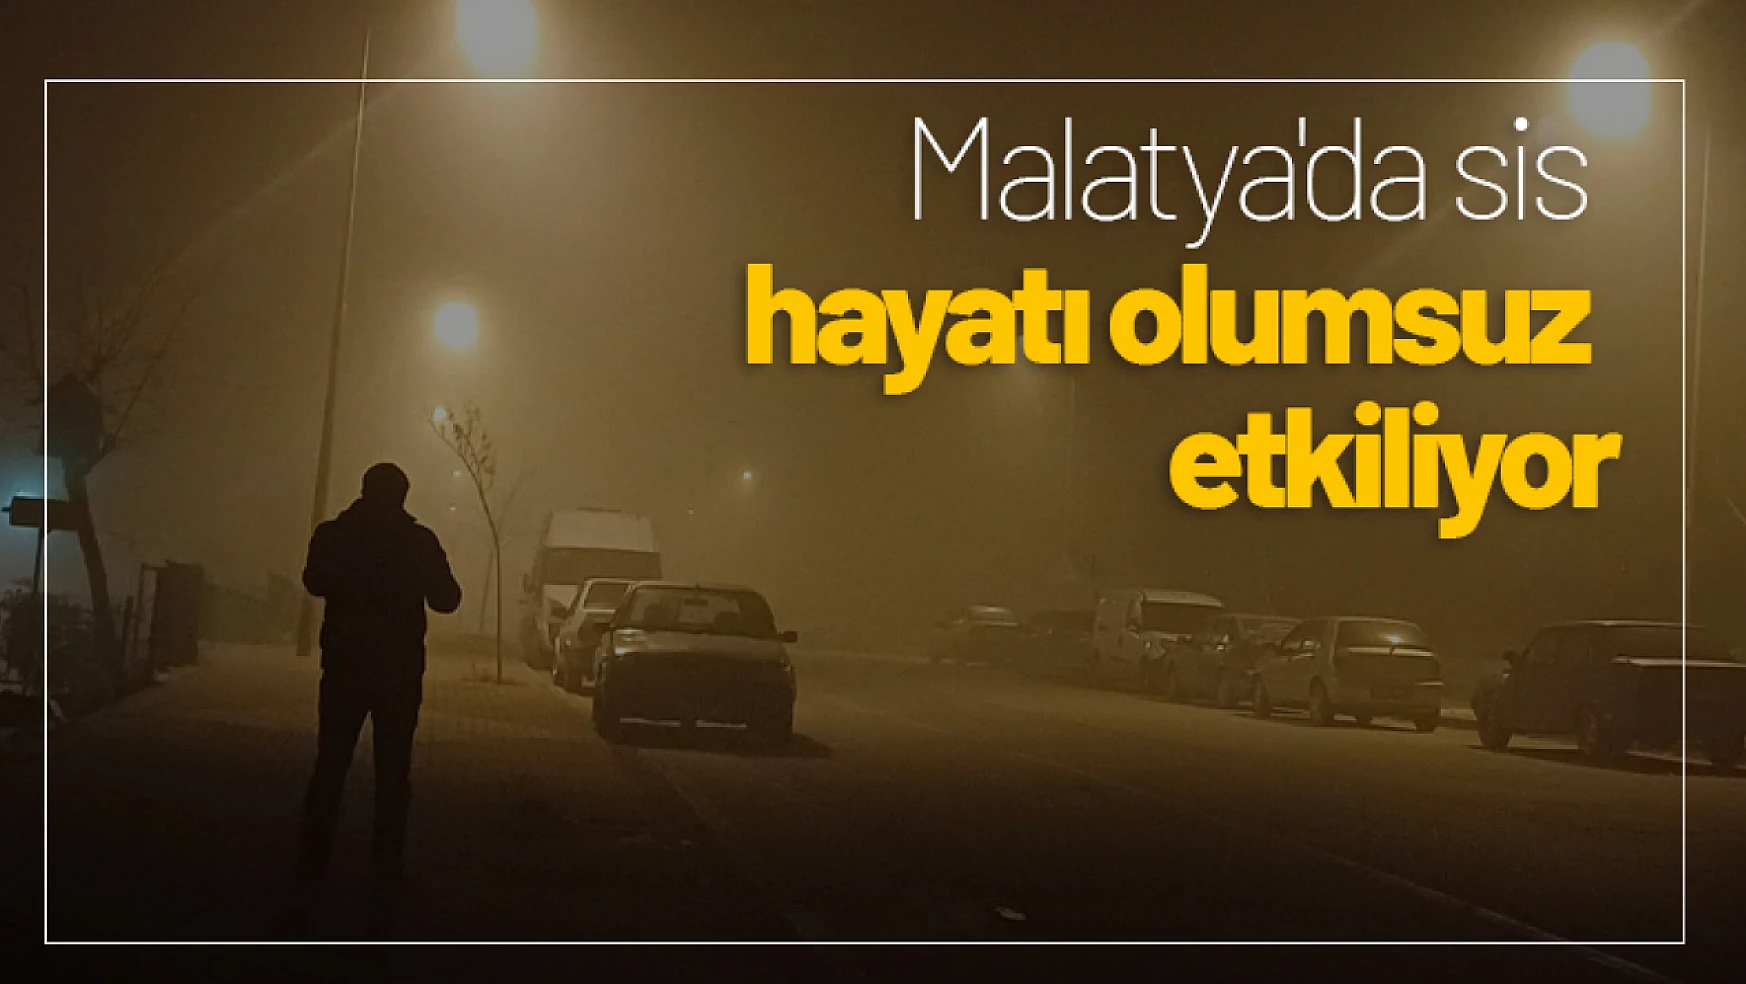 Malatya'da sis hayatı olumsuz etkiliyor